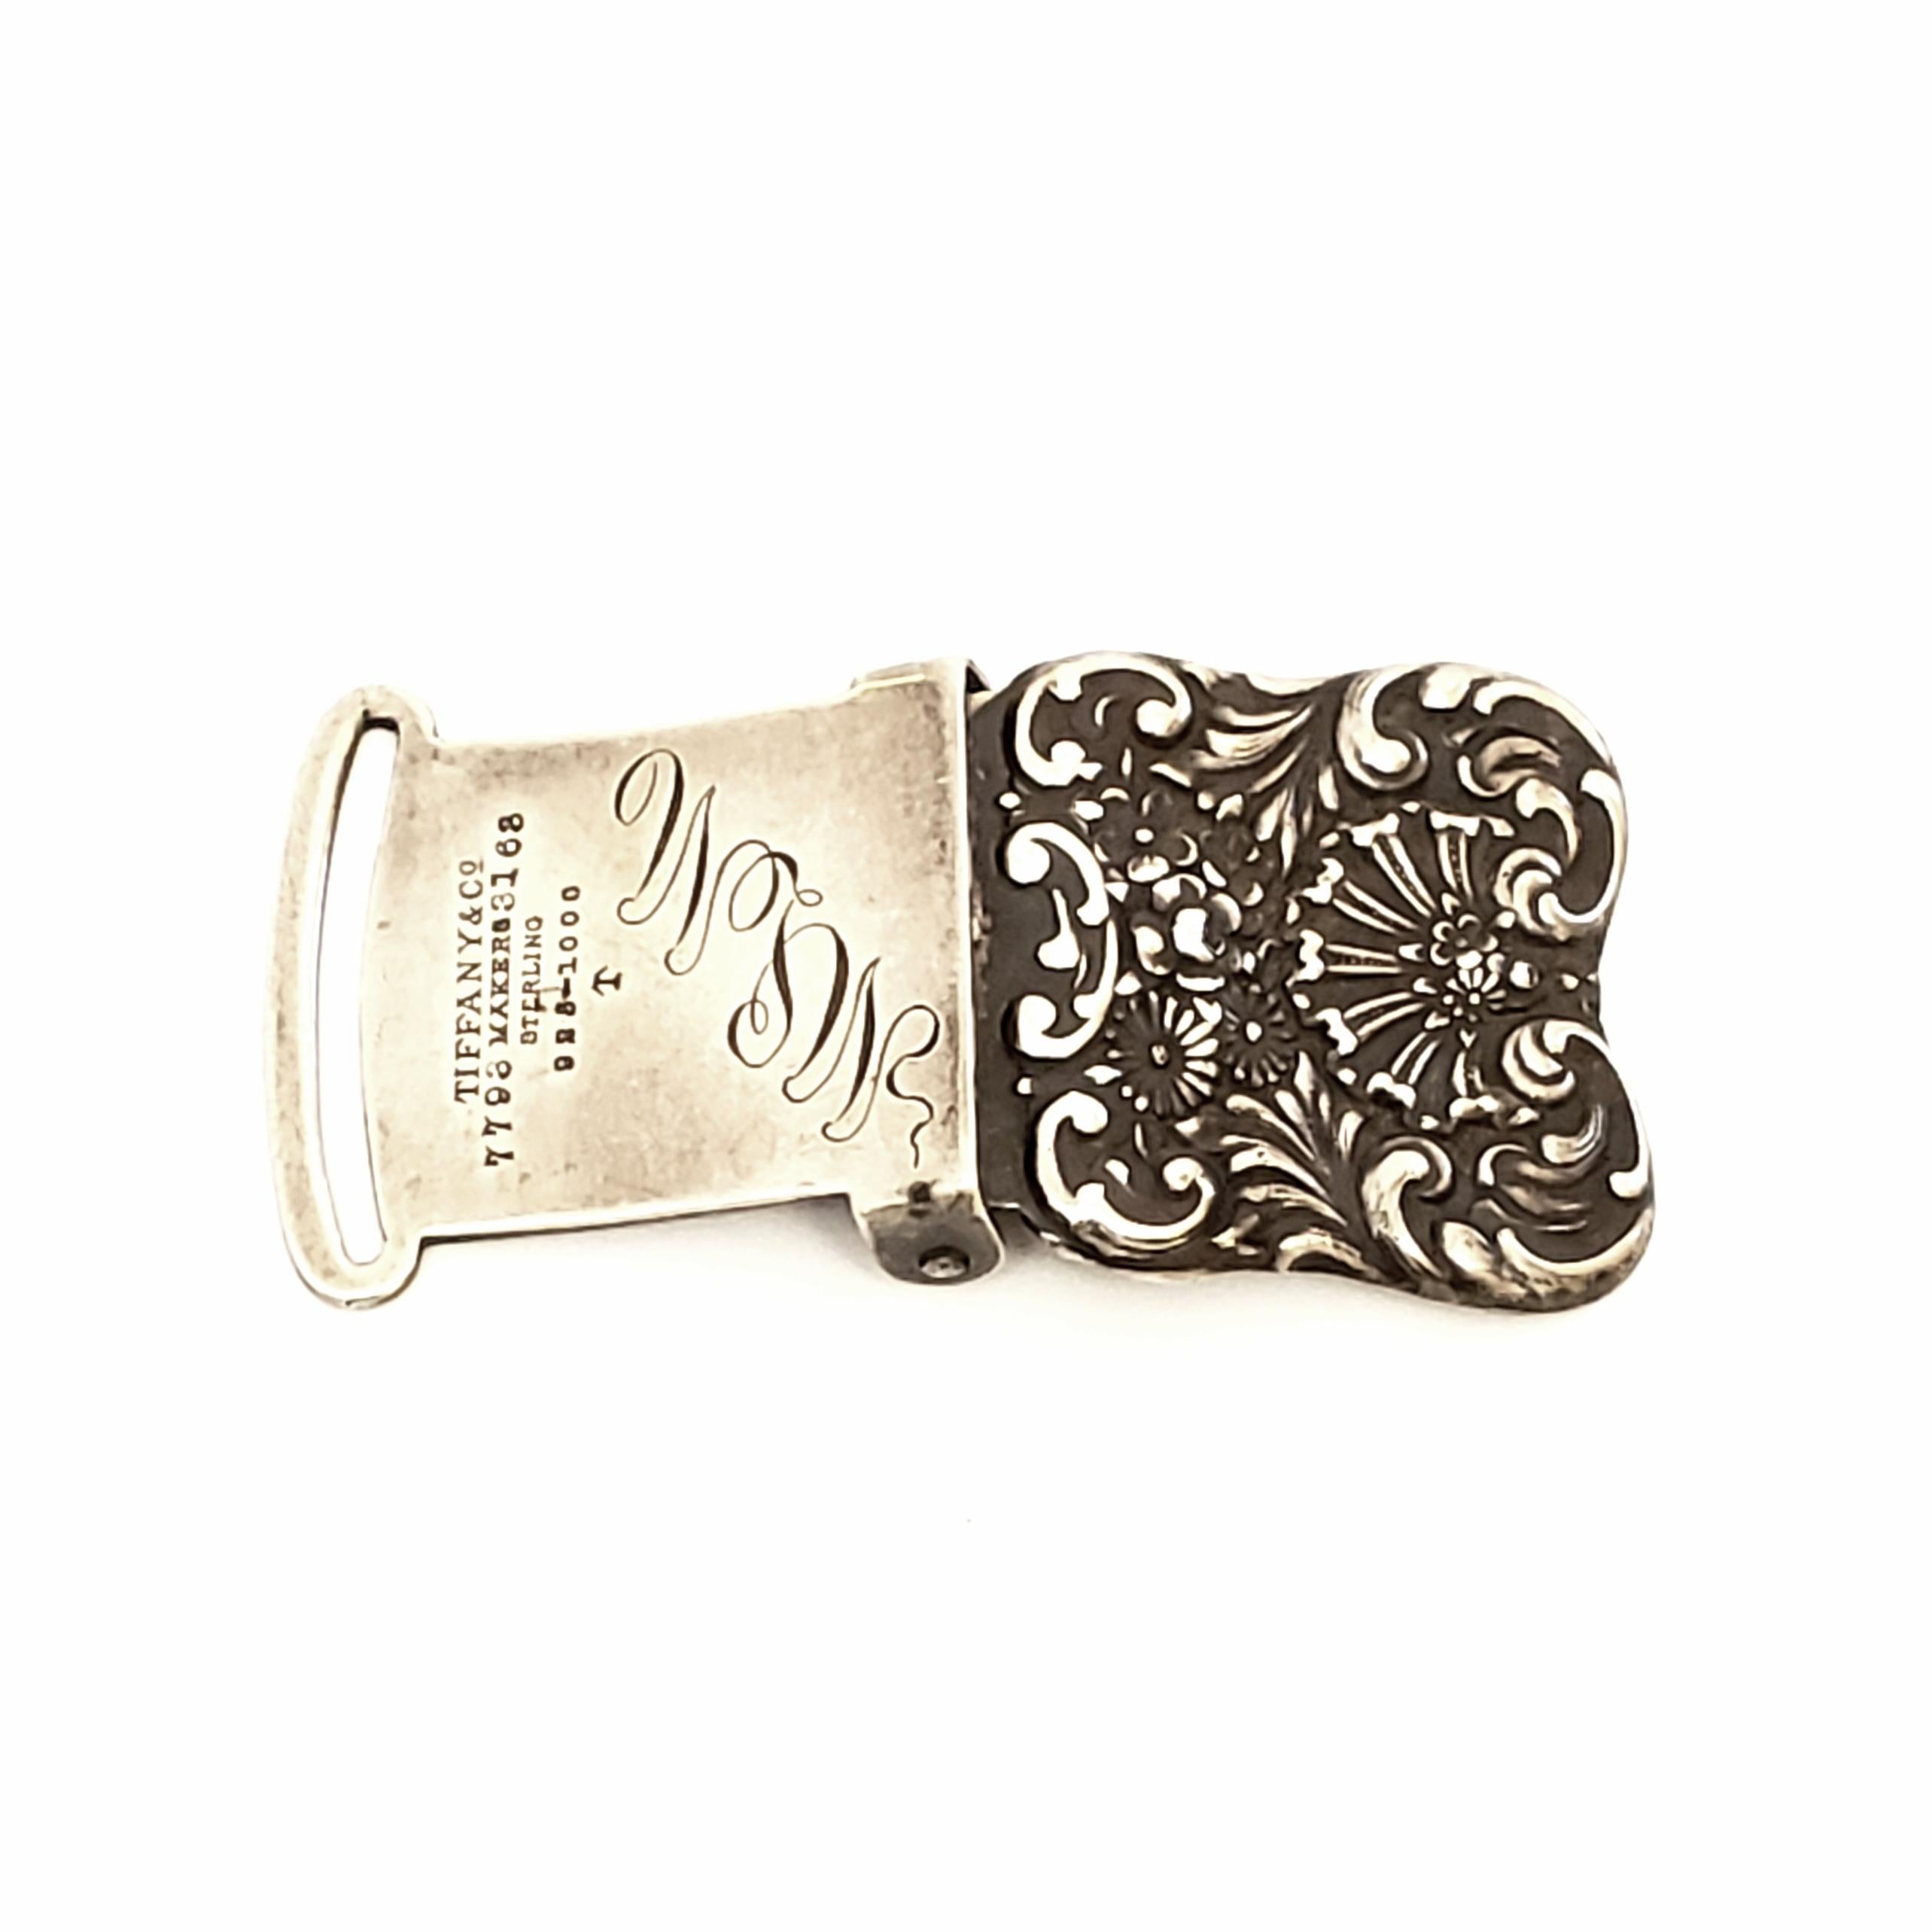 Petite boucle carrée de ceinture en argent sterling de Tiffany & Co, vers 1892-1902.

Beau design ciselé et respoussé avec des motifs floraux et des volutes. Réalisé sous la direction de Charles L. Tiffany. 

Monogram semble être un MLM

Mesure 1